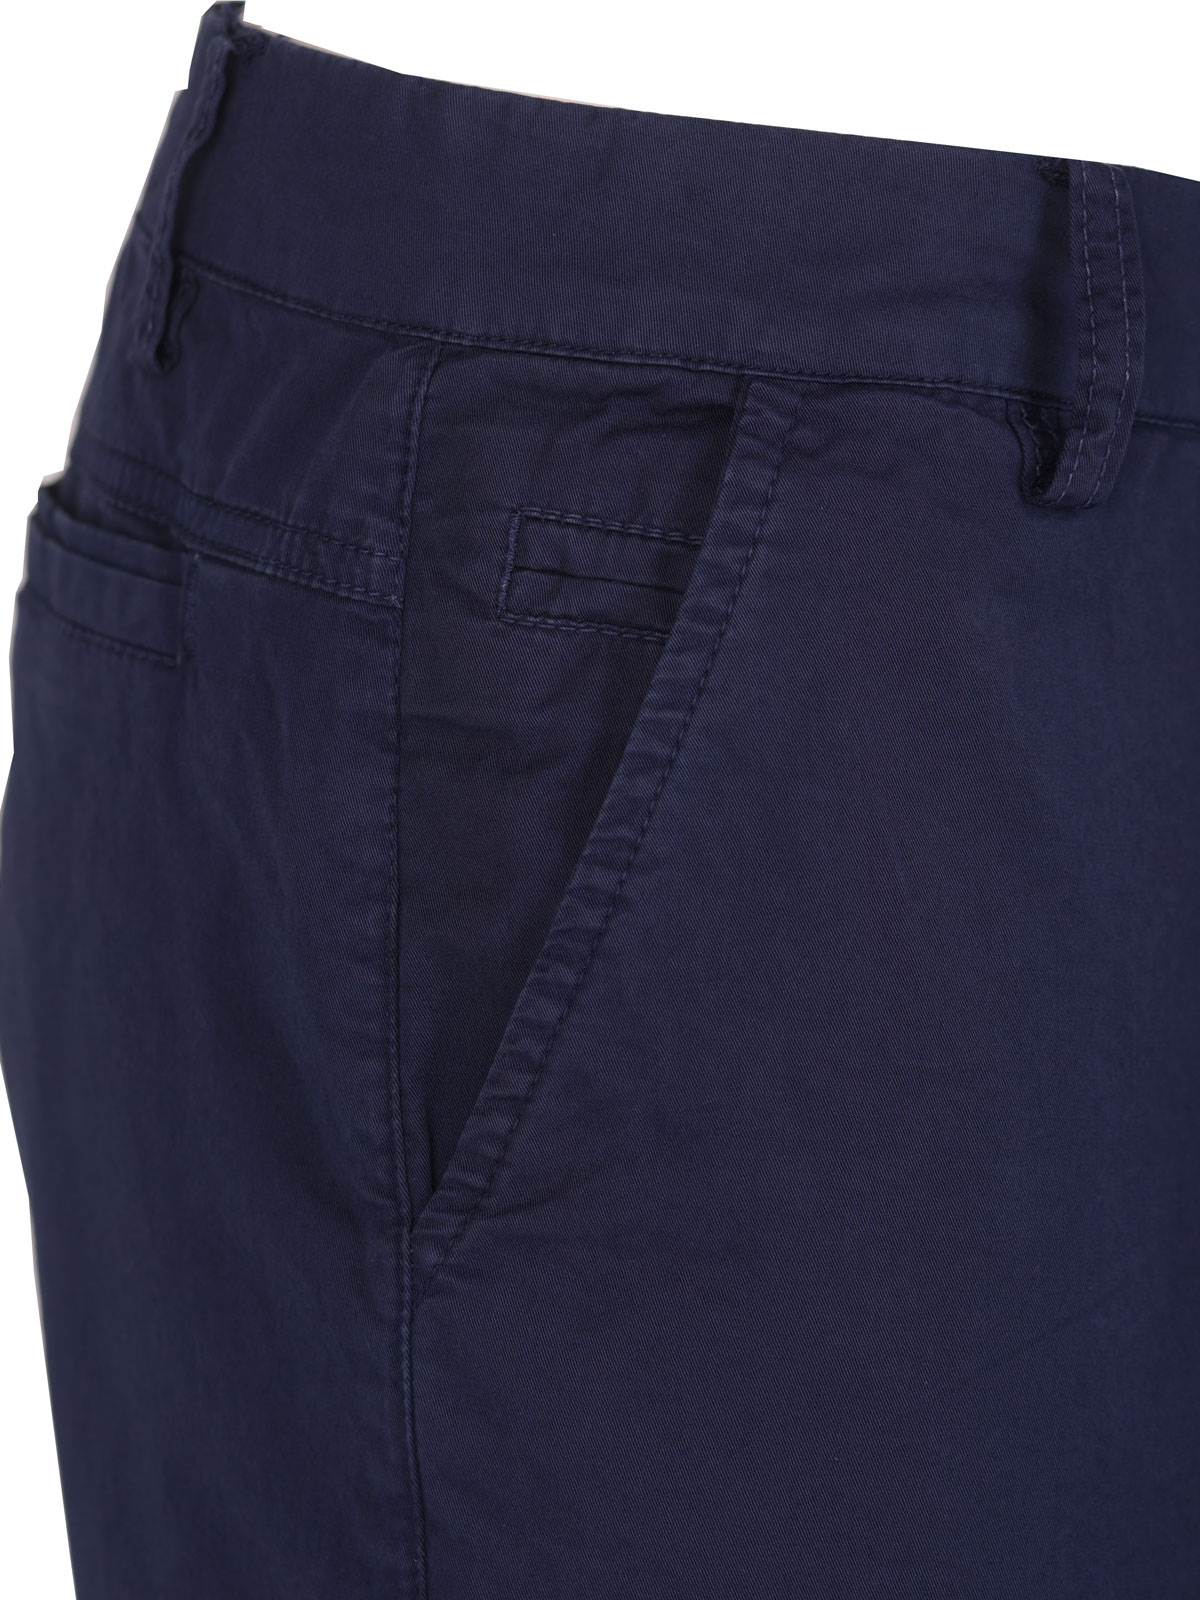 Pantaloni scurți în albastru - 67091 € 43.87 img2